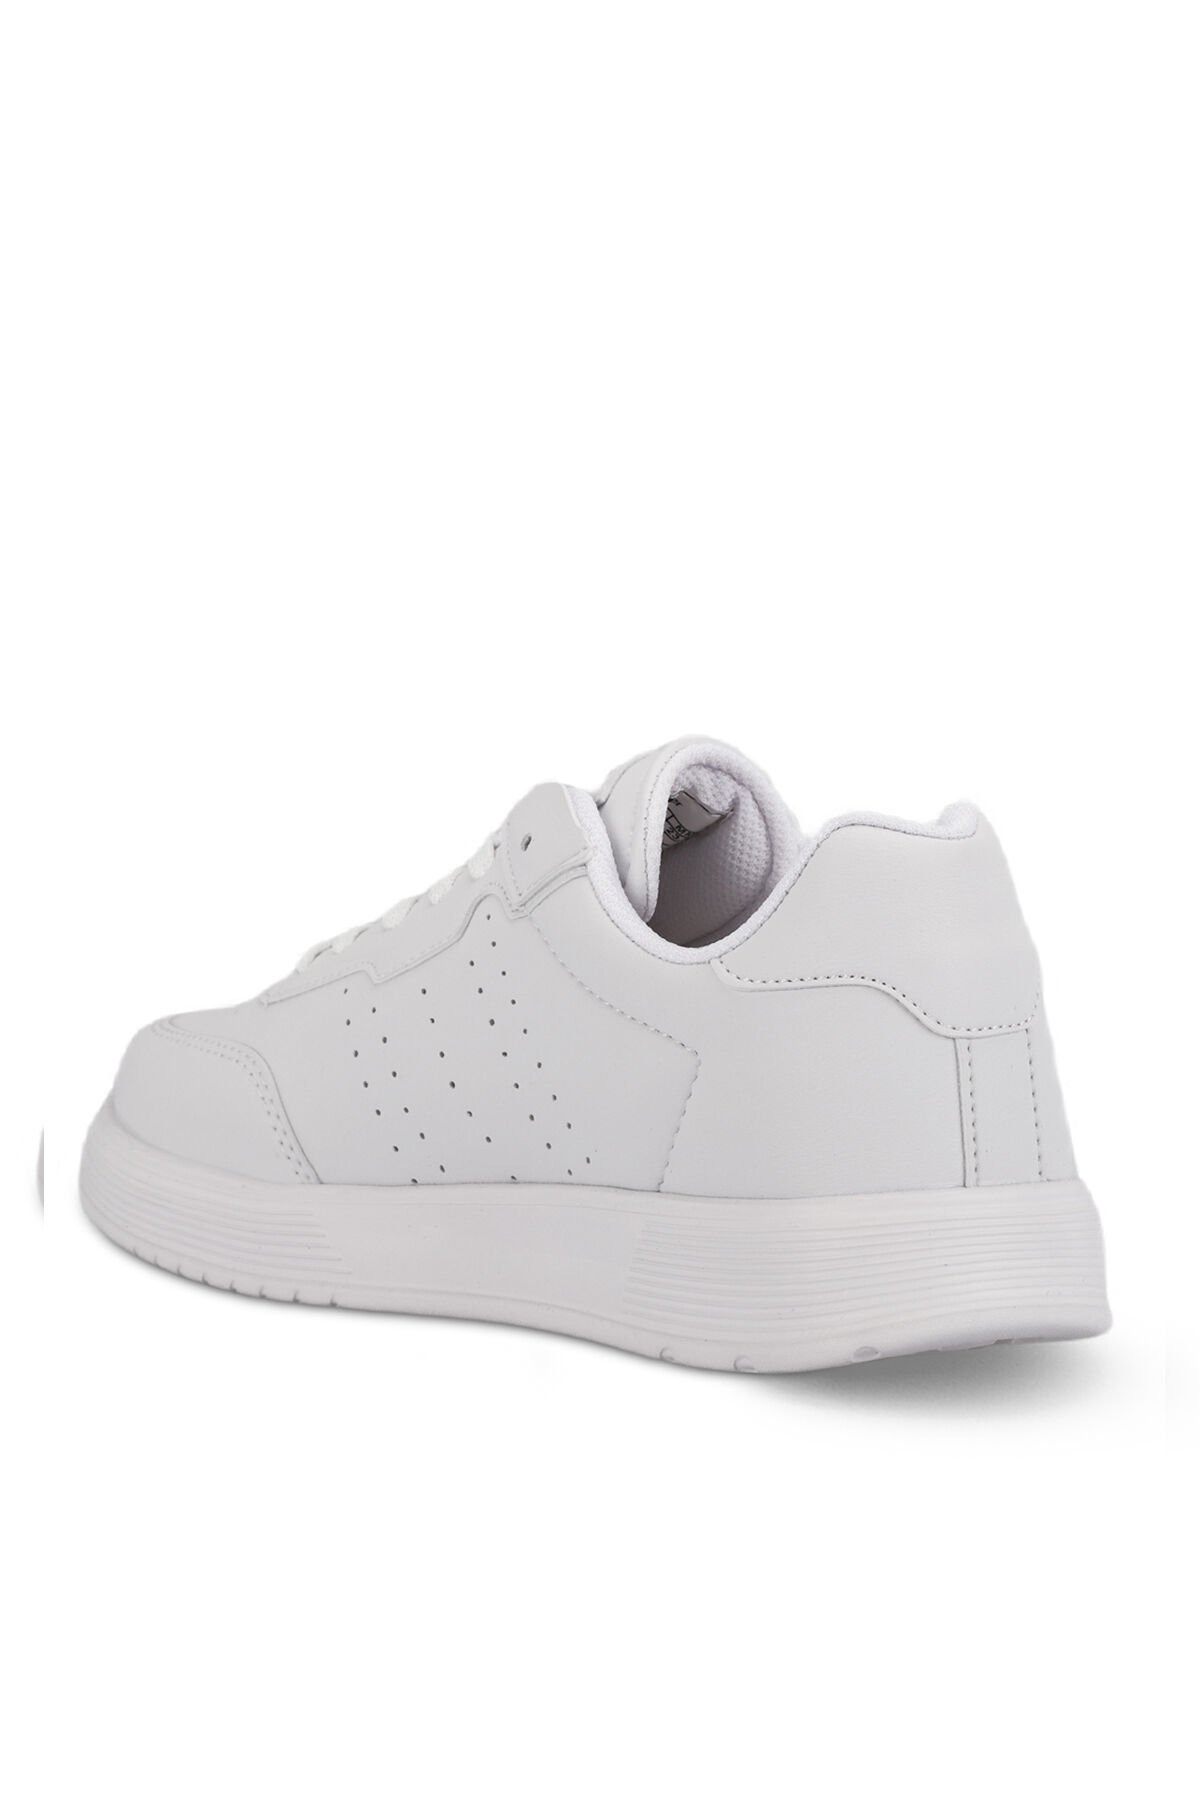 ZEKKO Sneaker Kadın Ayakkabı Beyaz - Thumbnail